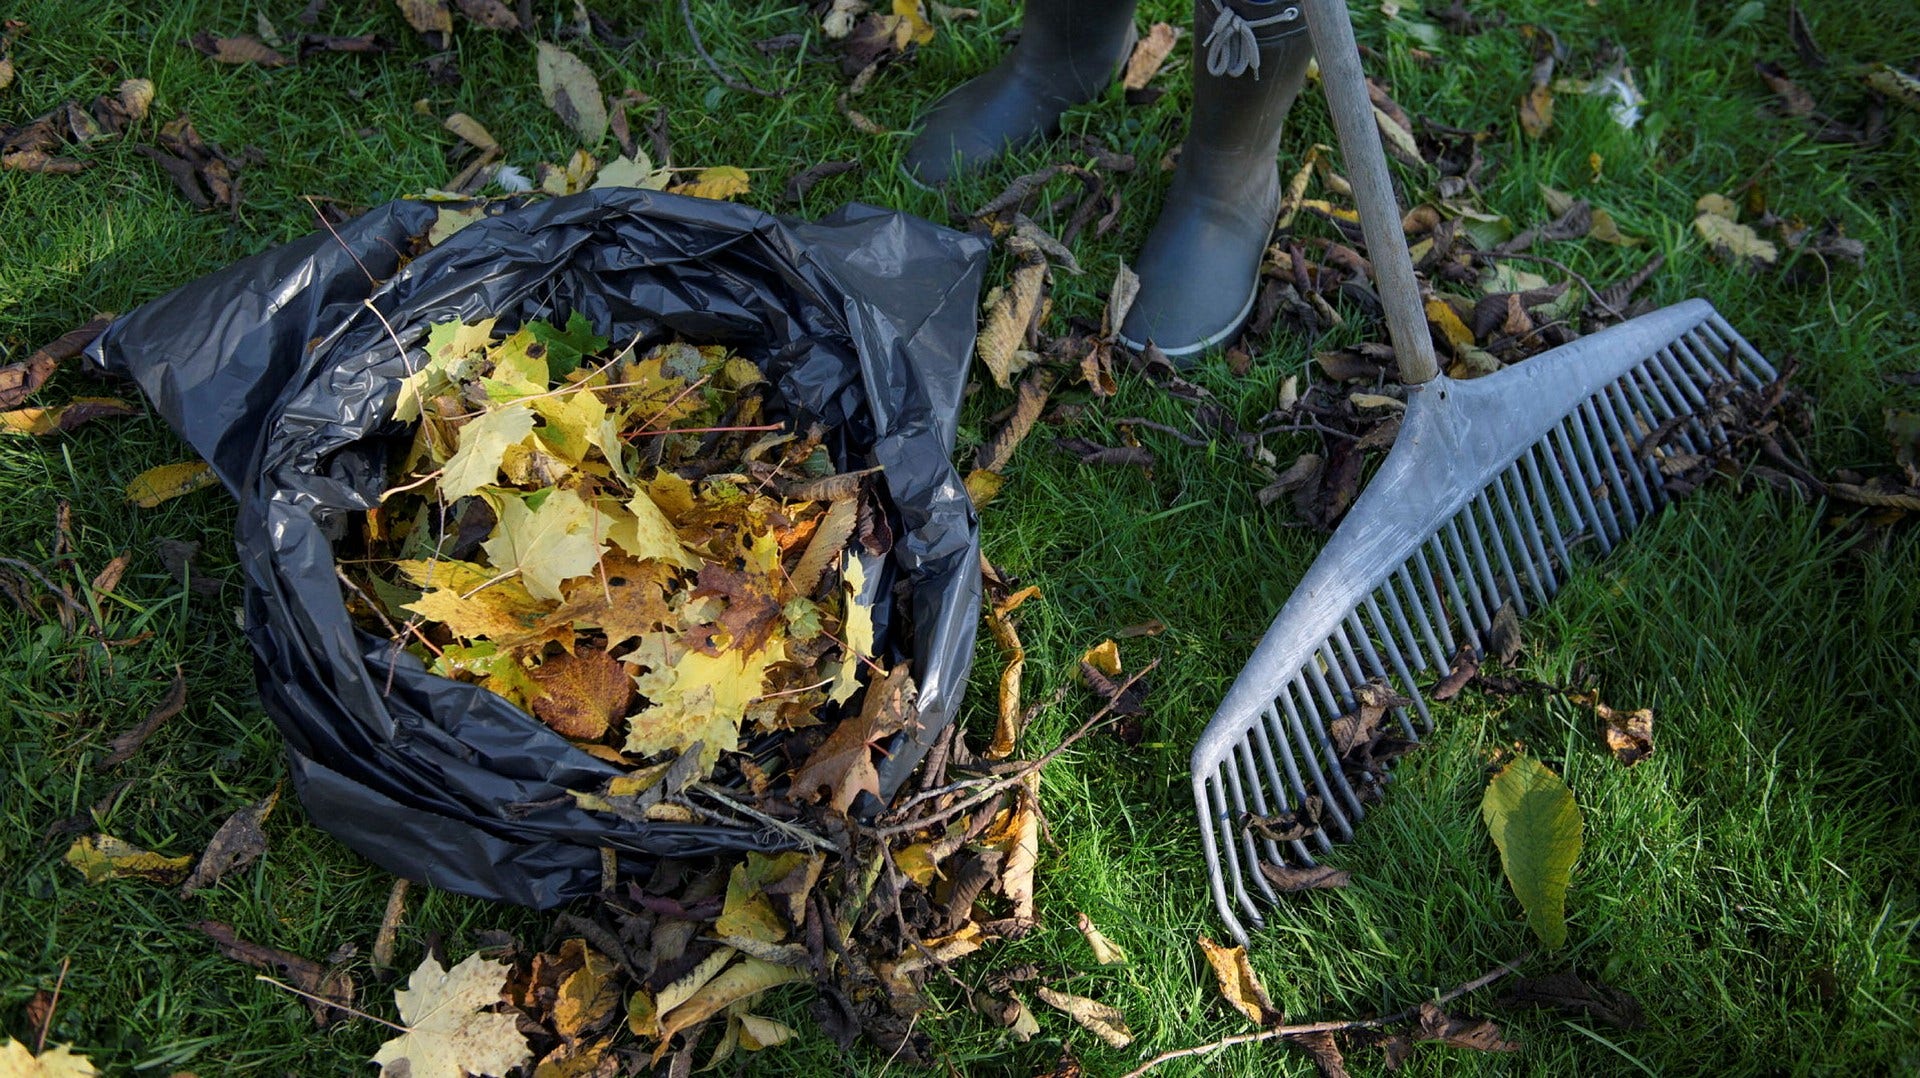 Lövkompost som gjorts av löv kan användas i trädgården som jord när dessa förmultnat, påpekar insändarskribenten.